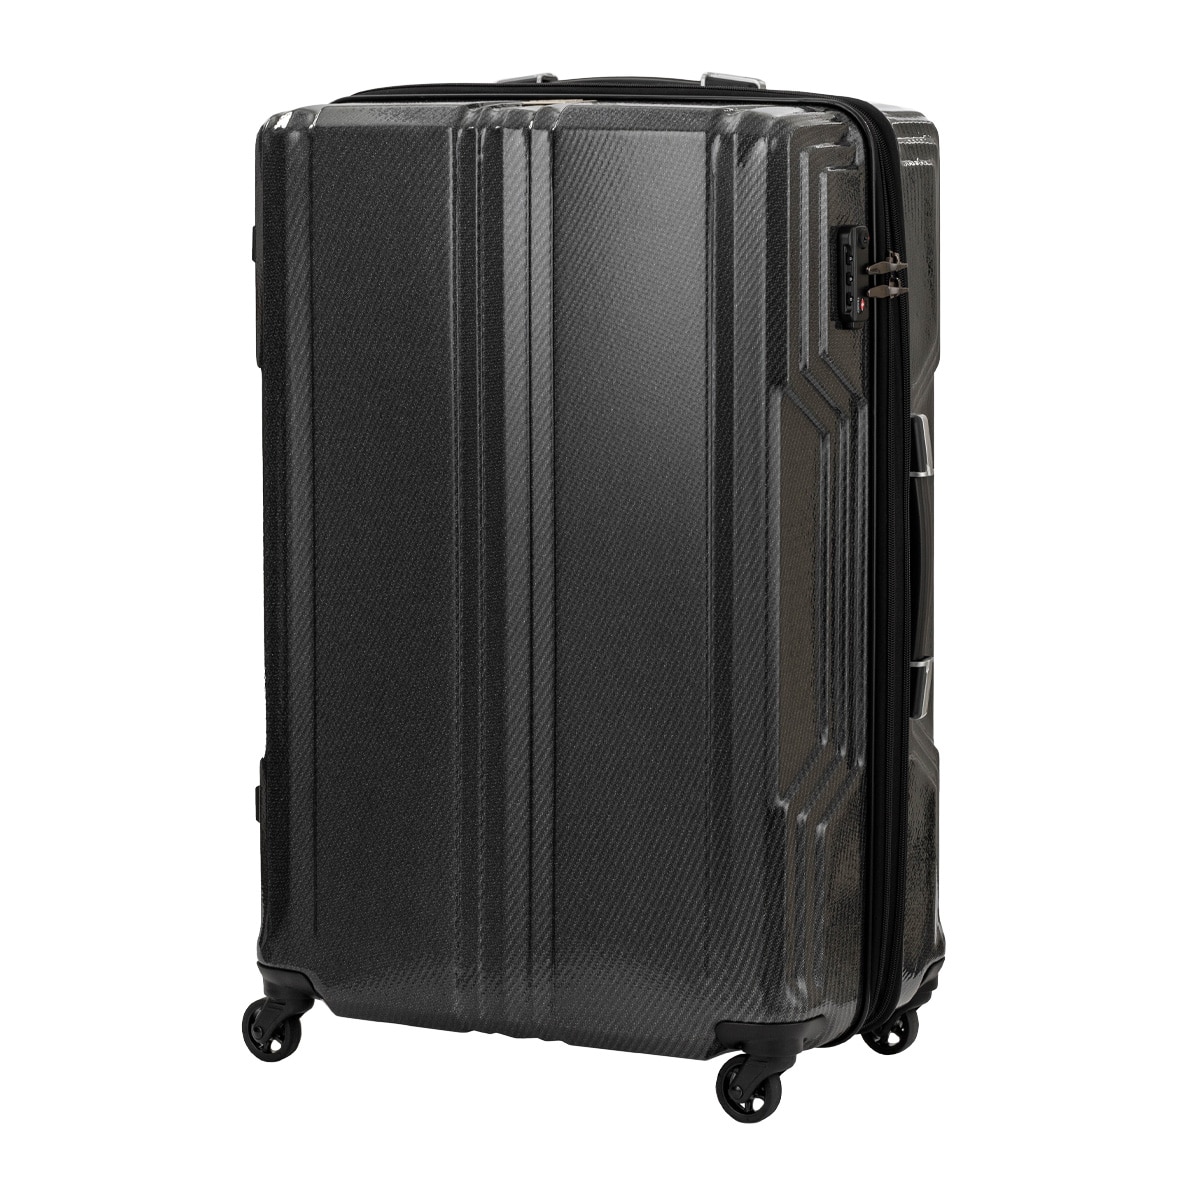 レジェンドウォーカー スーツケース 拡張機能付き 89L 70cm 3.7kg ブレイド 超軽量PCファイバー 5604-70  LEGENDWALKER BLADE Ultralight ハード ファスナー キャリーケース キャリーバッグ 防犯 エキスパンダブル 1年保証